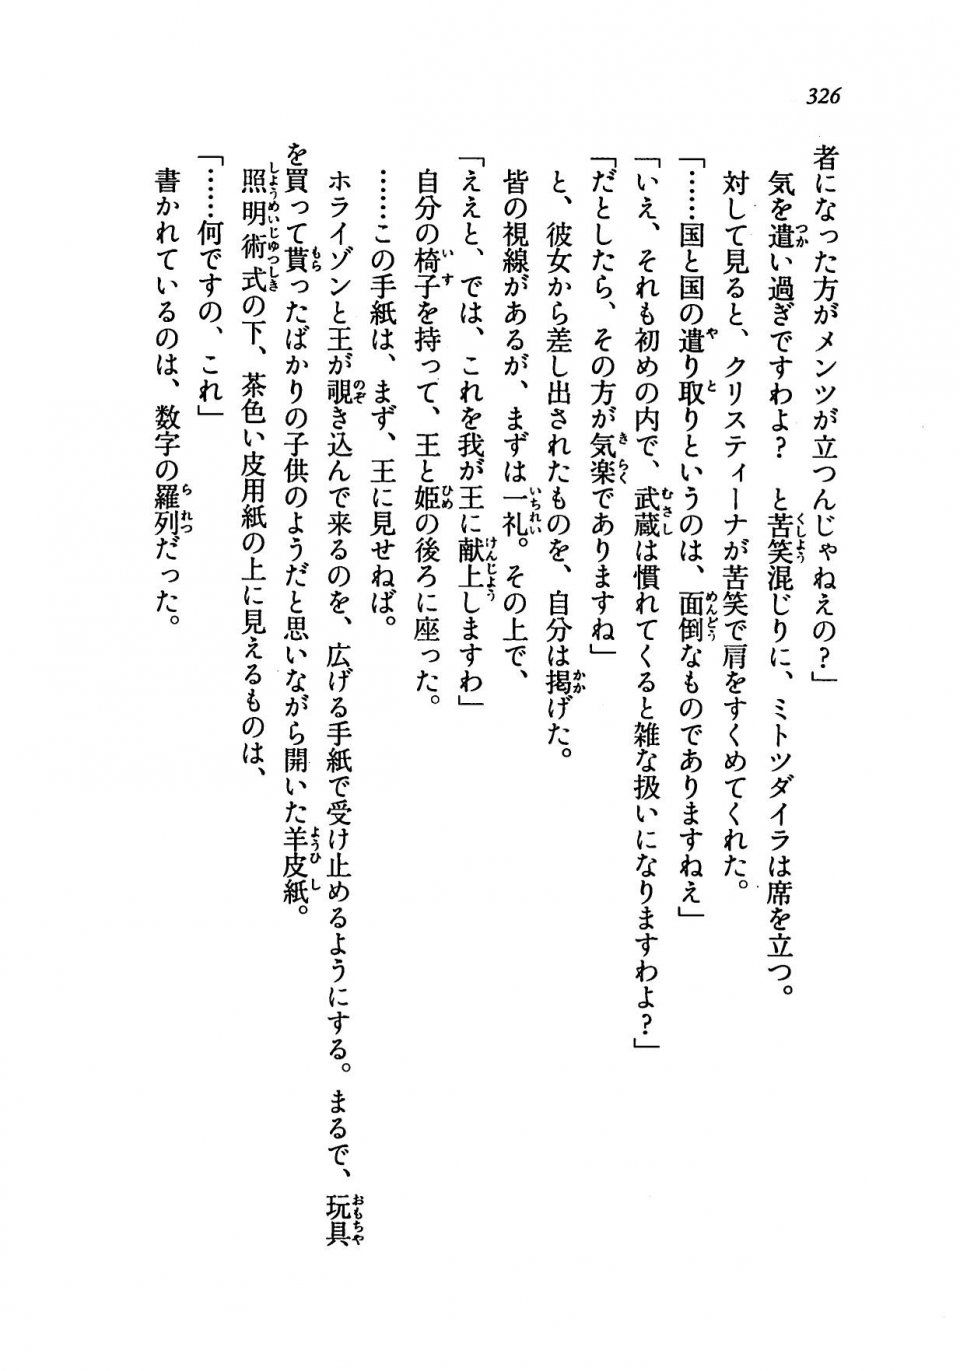 Kyoukai Senjou no Horizon LN Vol 19(8A) - Photo #326